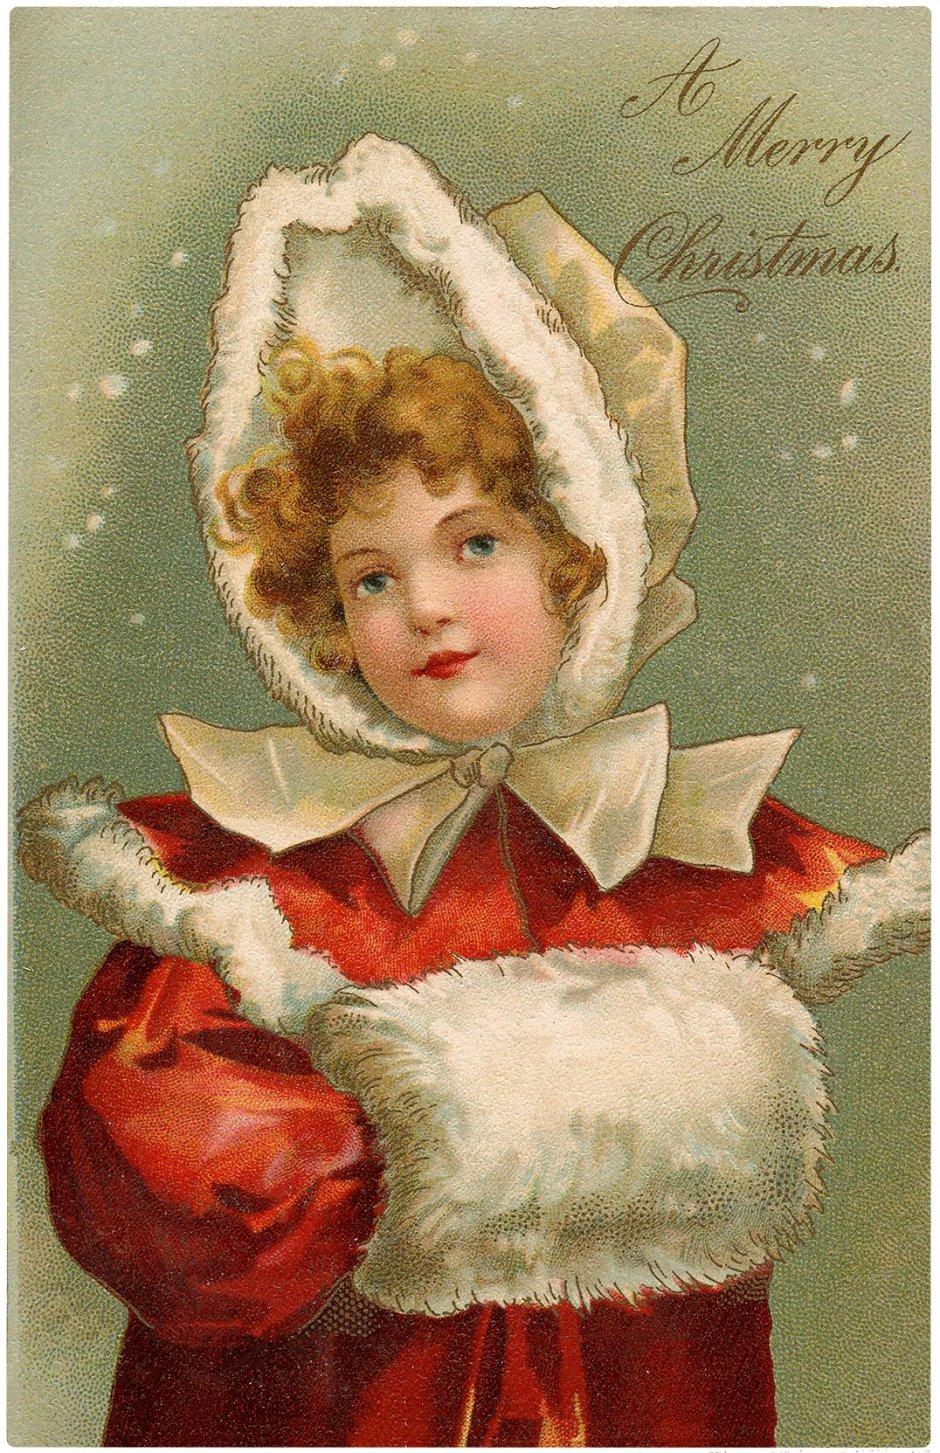 Рождественская открытка в стиле ретро